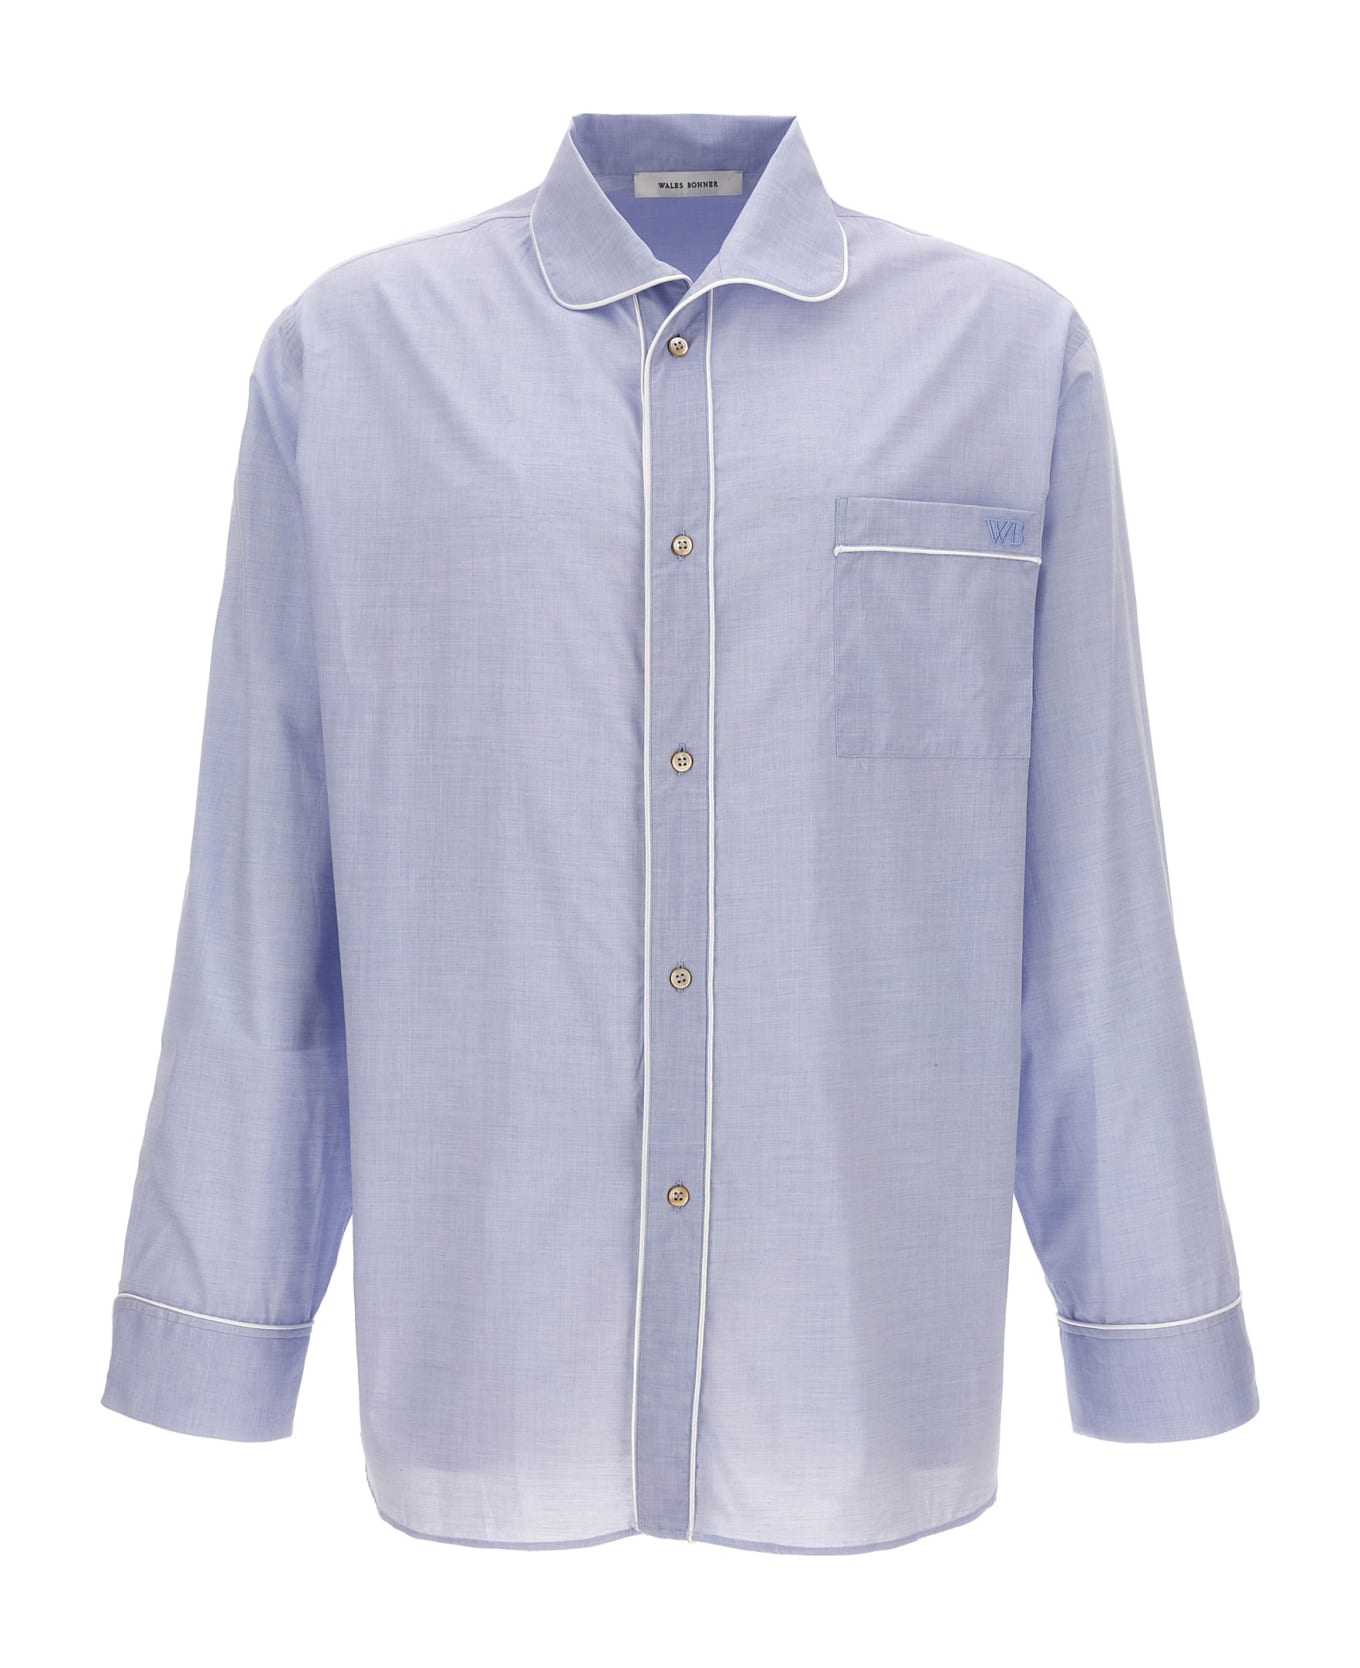 Wales Bonner 'market' Shirt - Light Blue シャツ